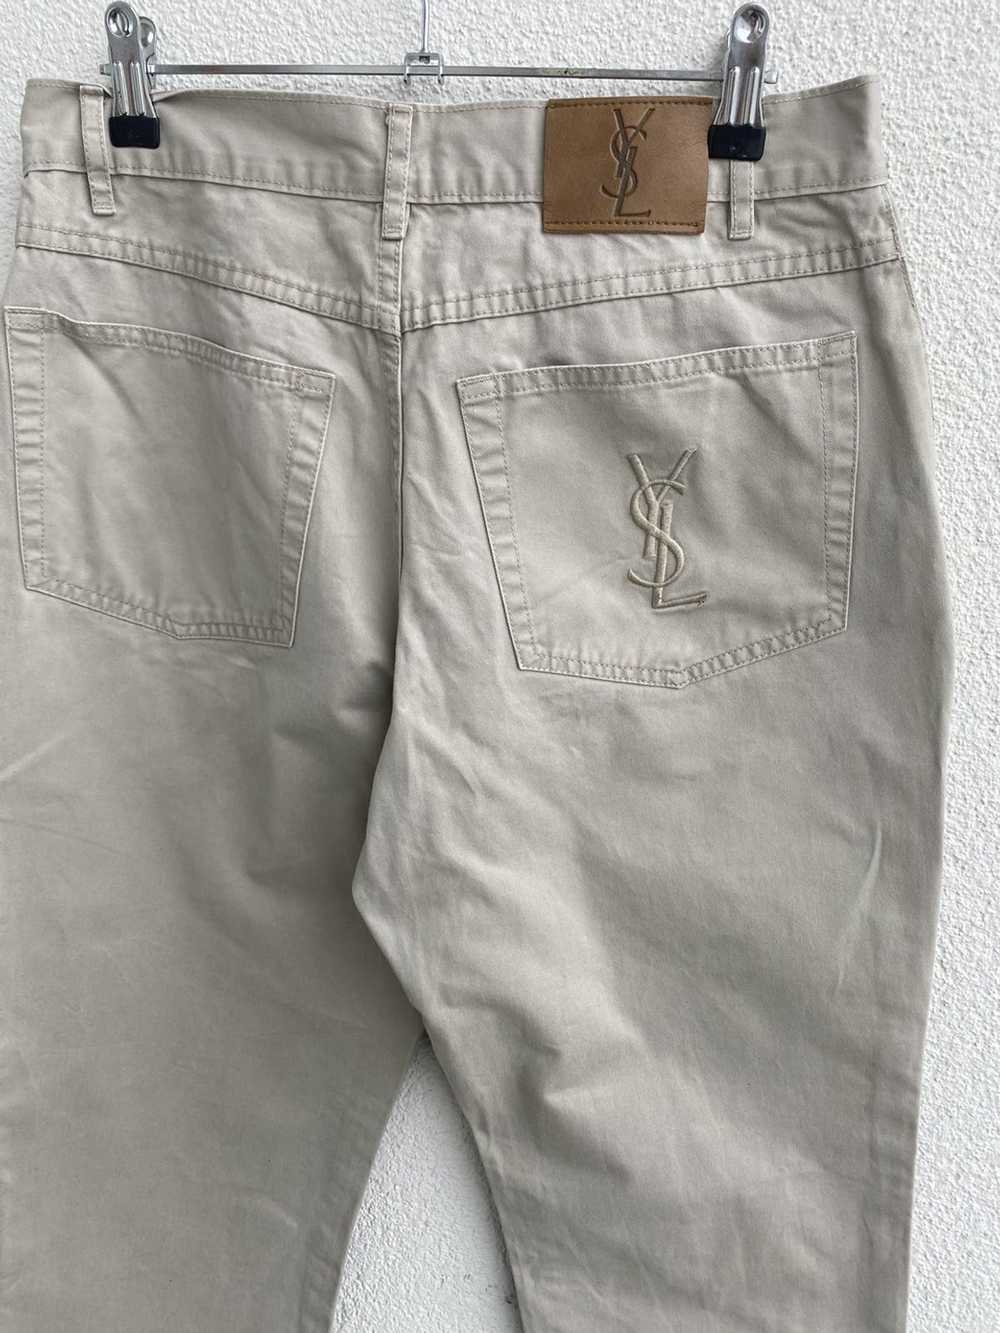 Yves Saint Laurent Beige YSL Cotton Jeans - image 2